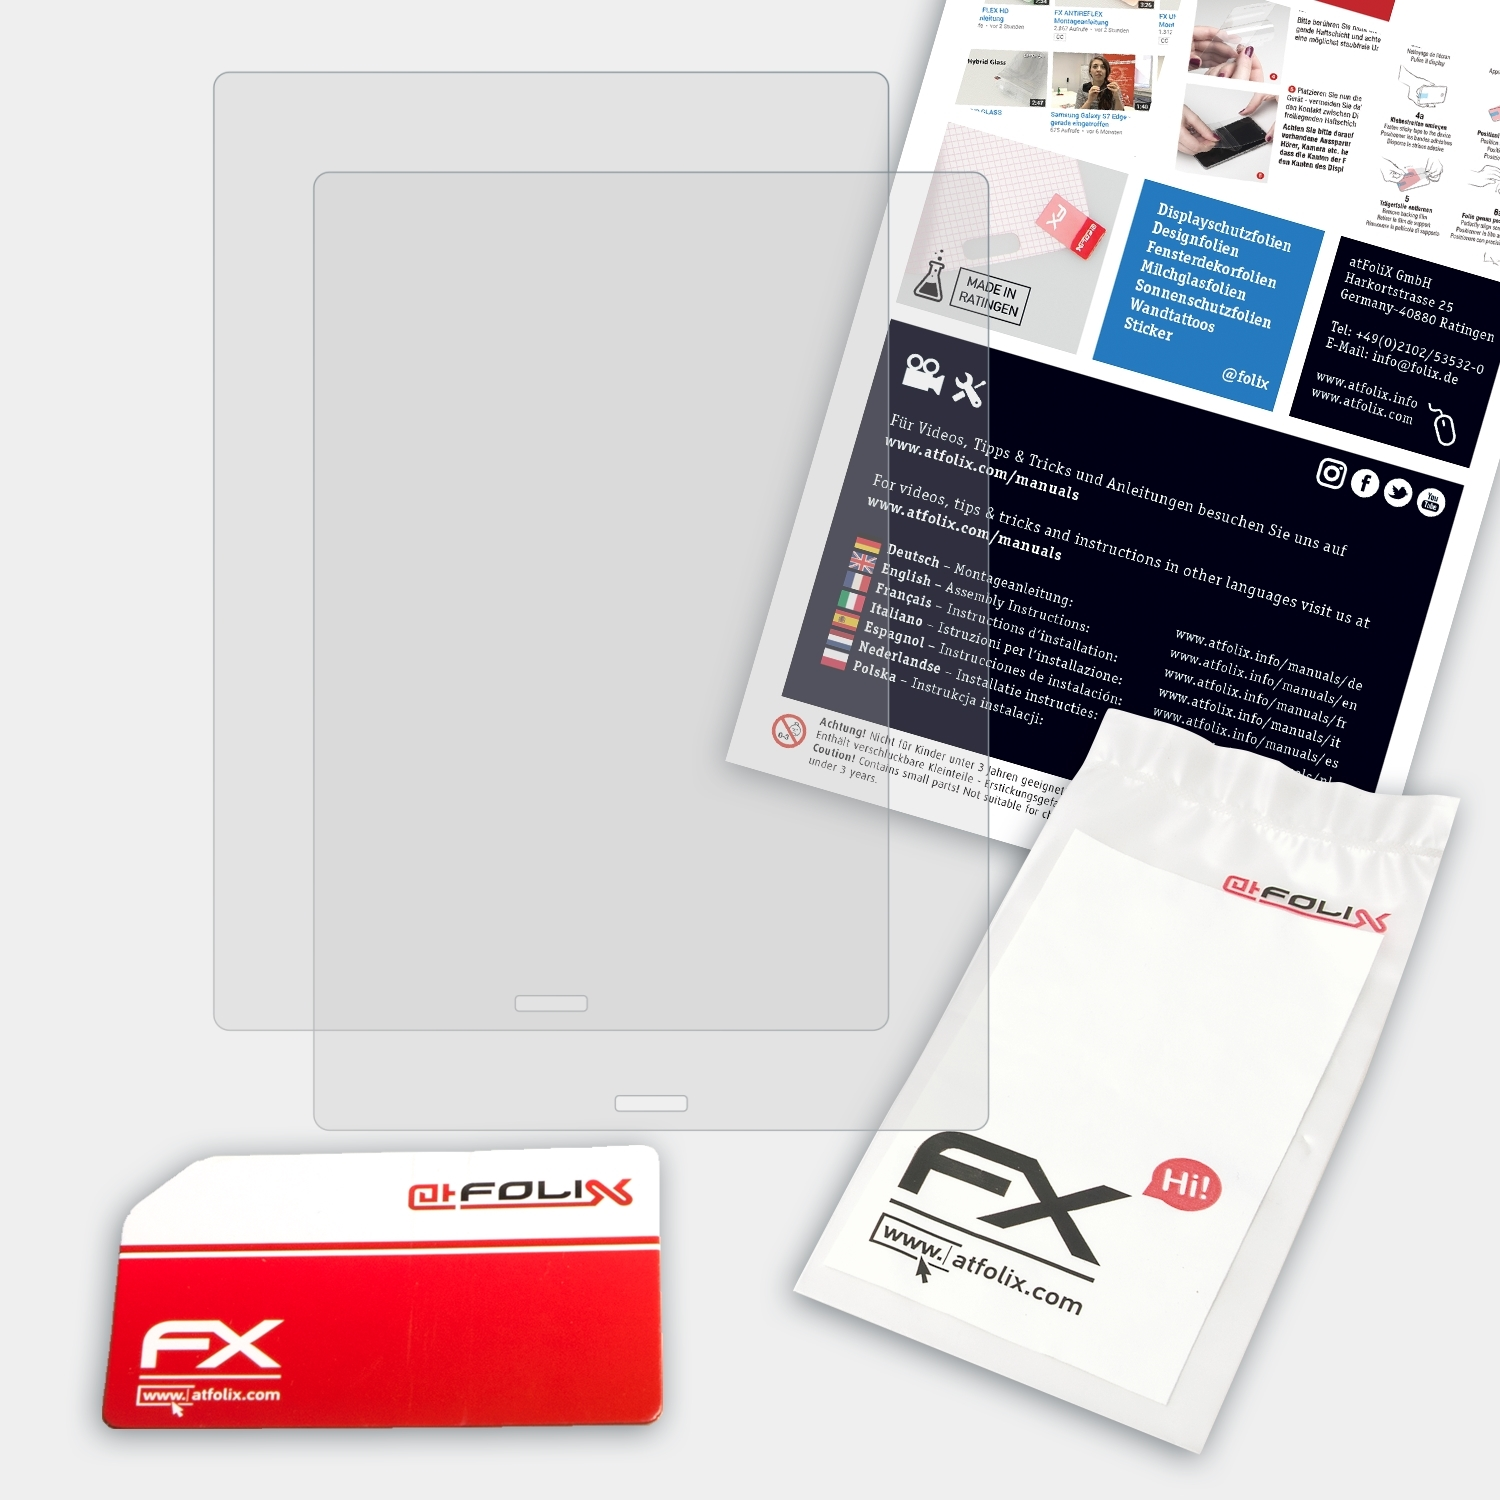 ATFOLIX 2x FX-Antireflex Displayschutz(für Note Pro) BOOX